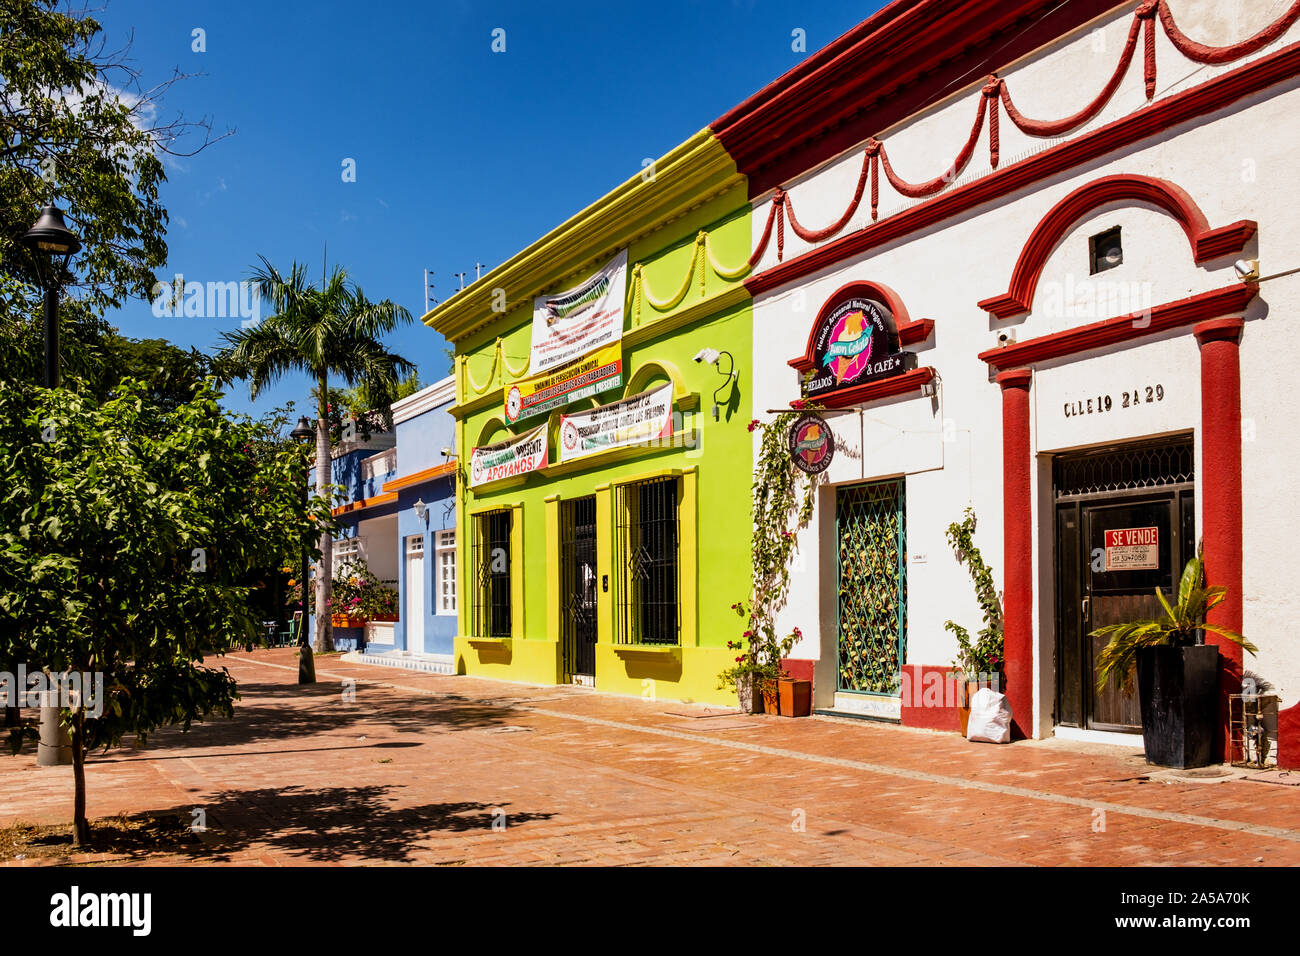 Die bunten Geschäfte und Gebäude in einer ruhigen Straße im historischen Zentrum von Santa Marta in Kolumbien Stockfoto